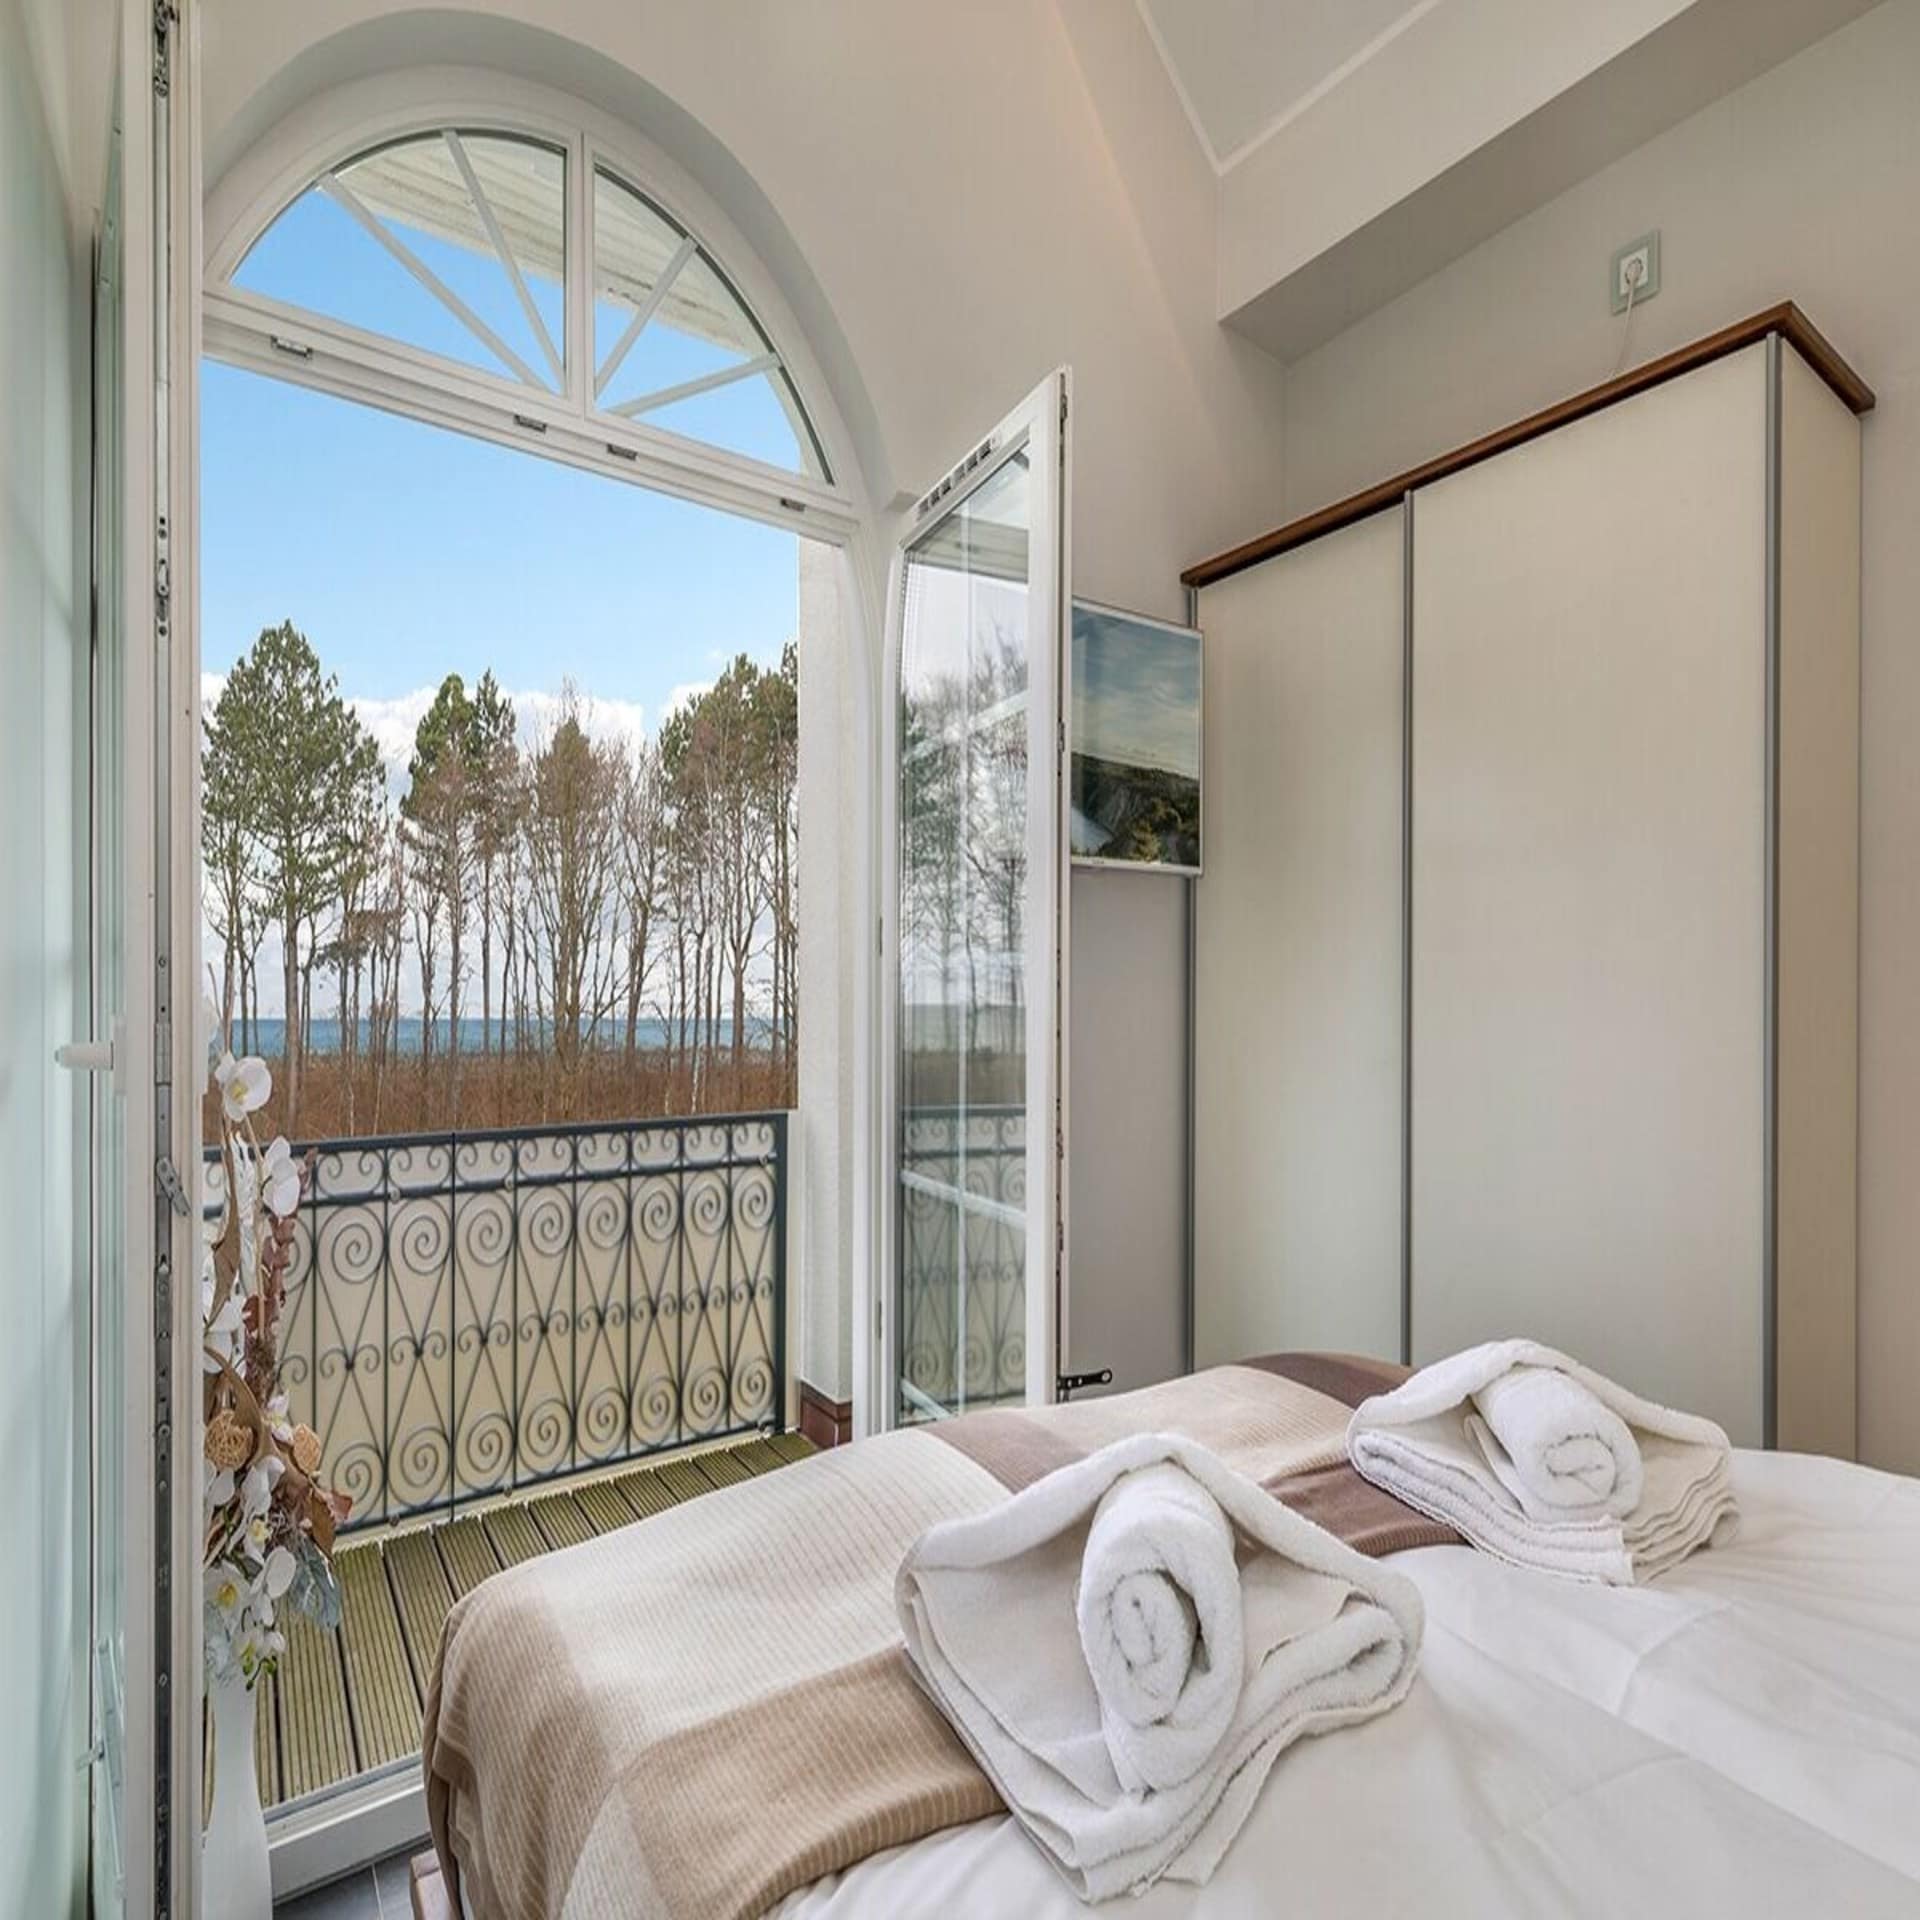 Schlafzimmer mit geöffneter Balkontür mit Blick auf das Meer und Bäume.